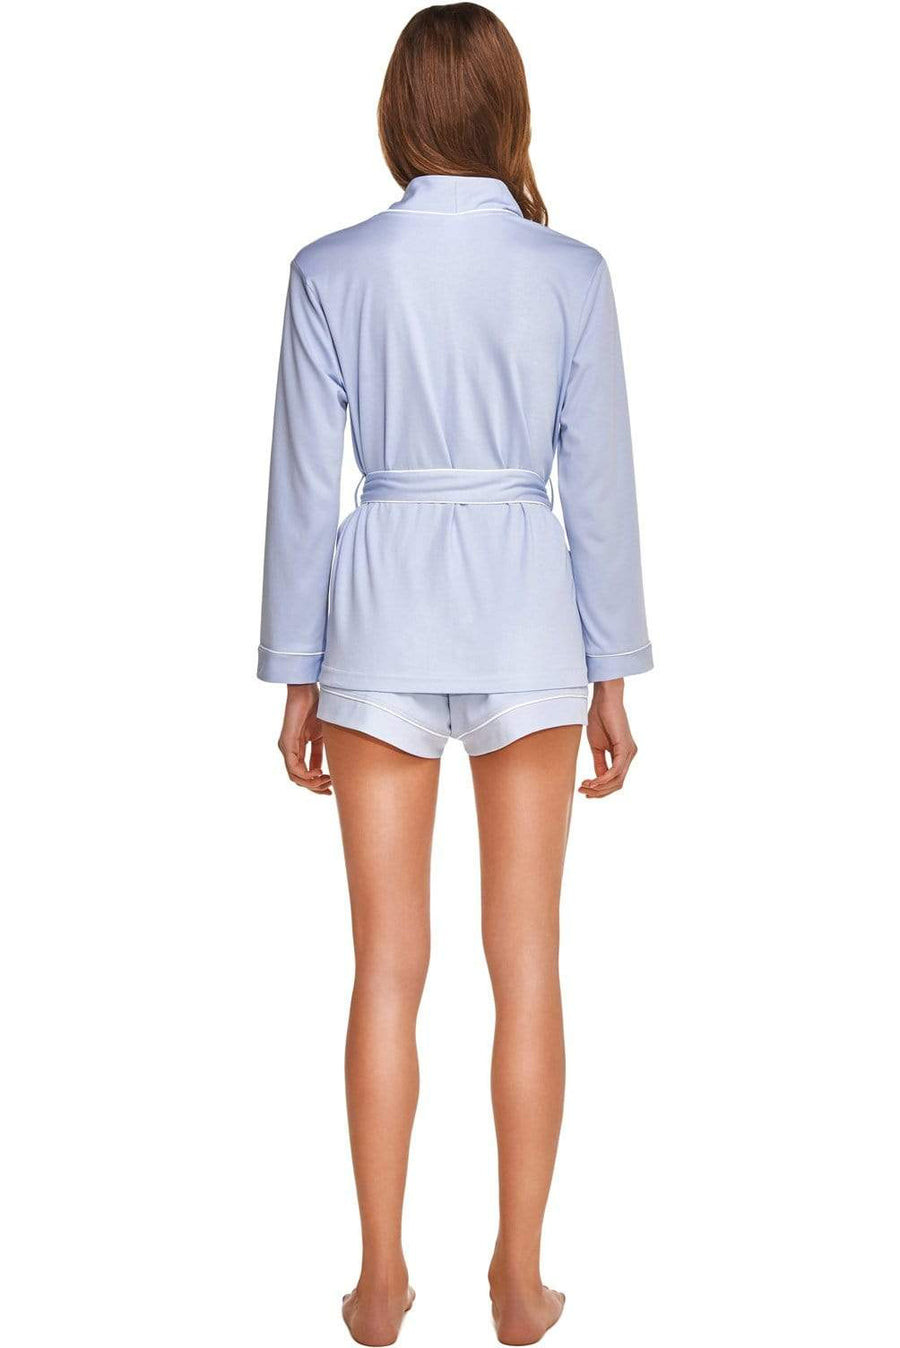 Pijama de mujer en algodón orgánico.